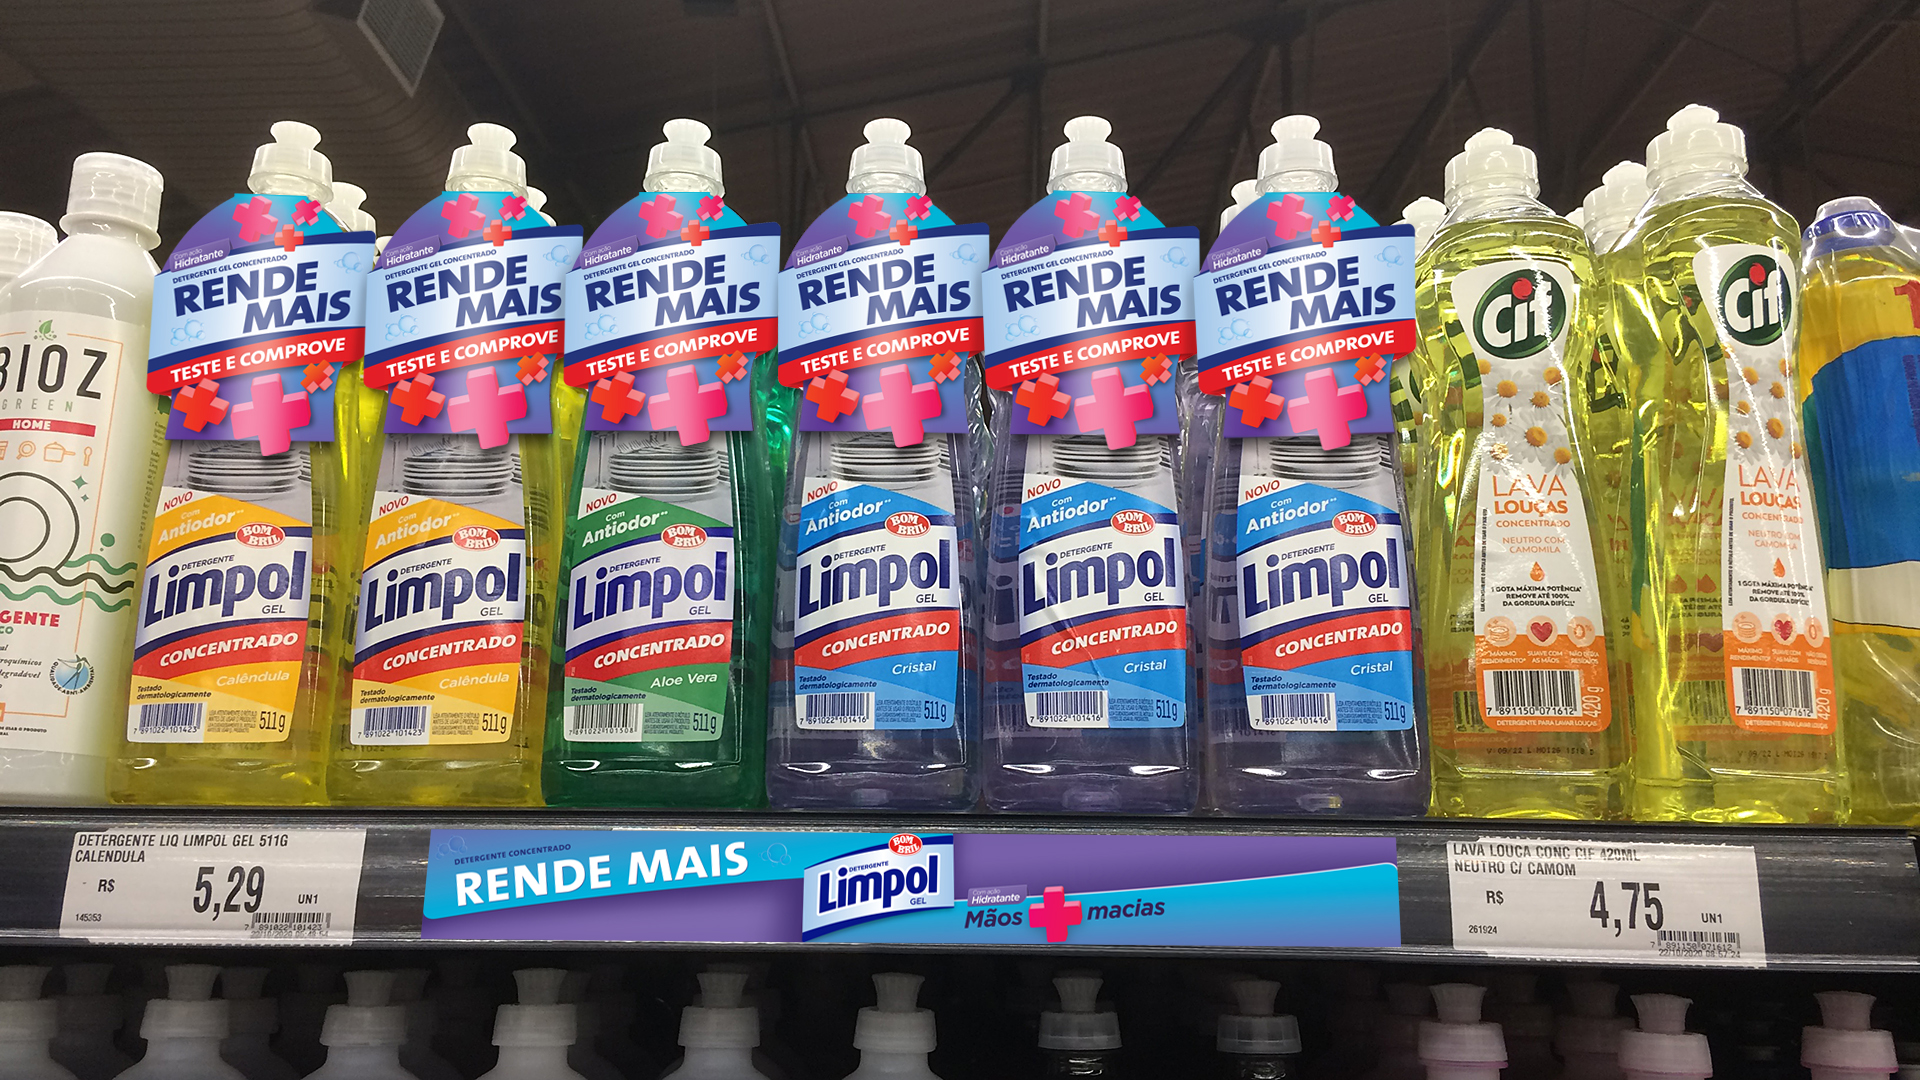 Imagem de gôondola de supermercado com produto Limpol e material para PDV Bombril.